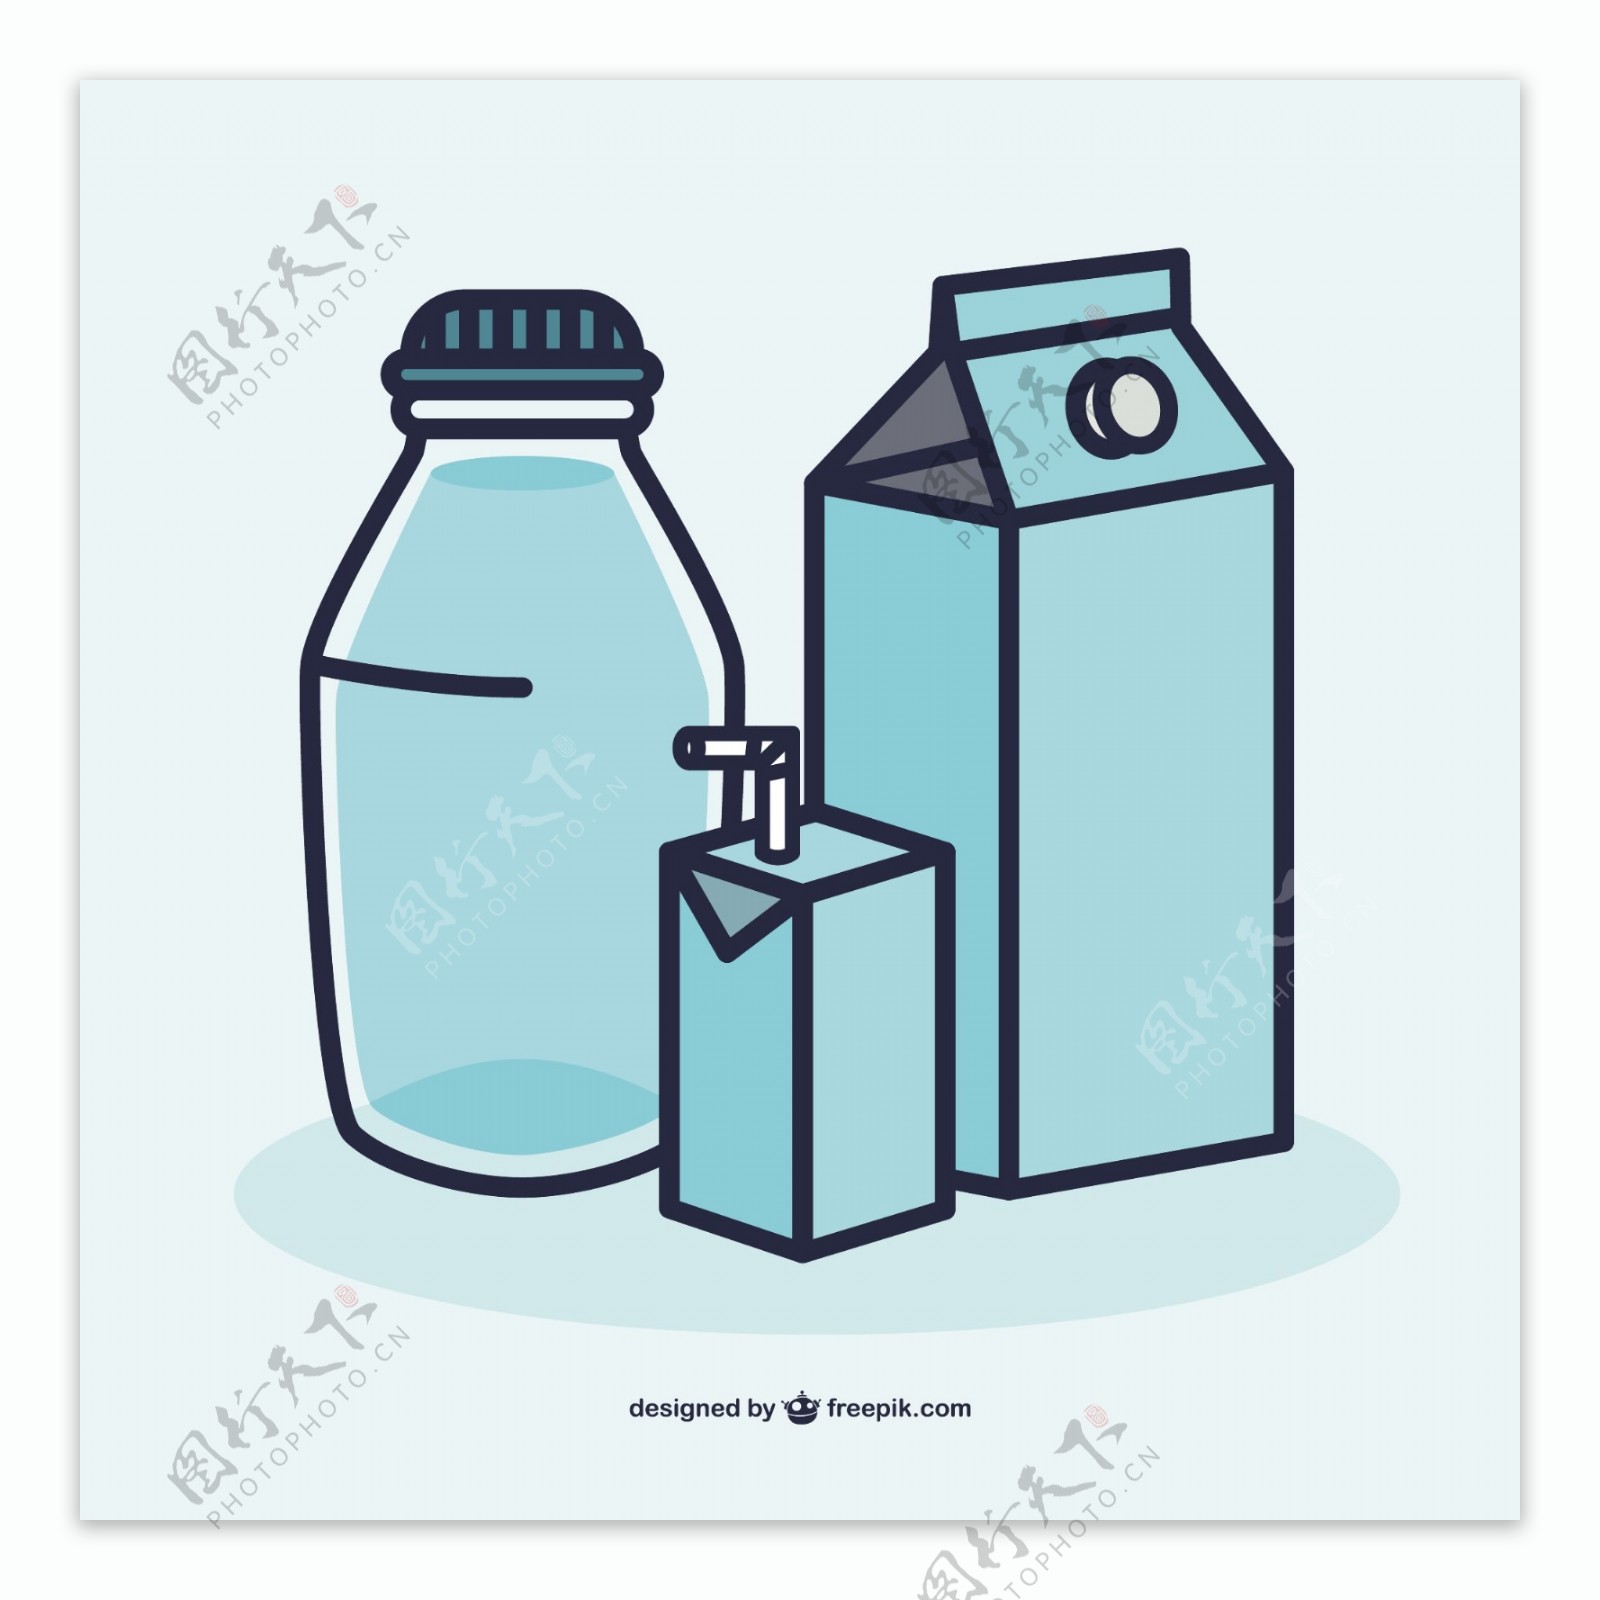 牛奶containters向量